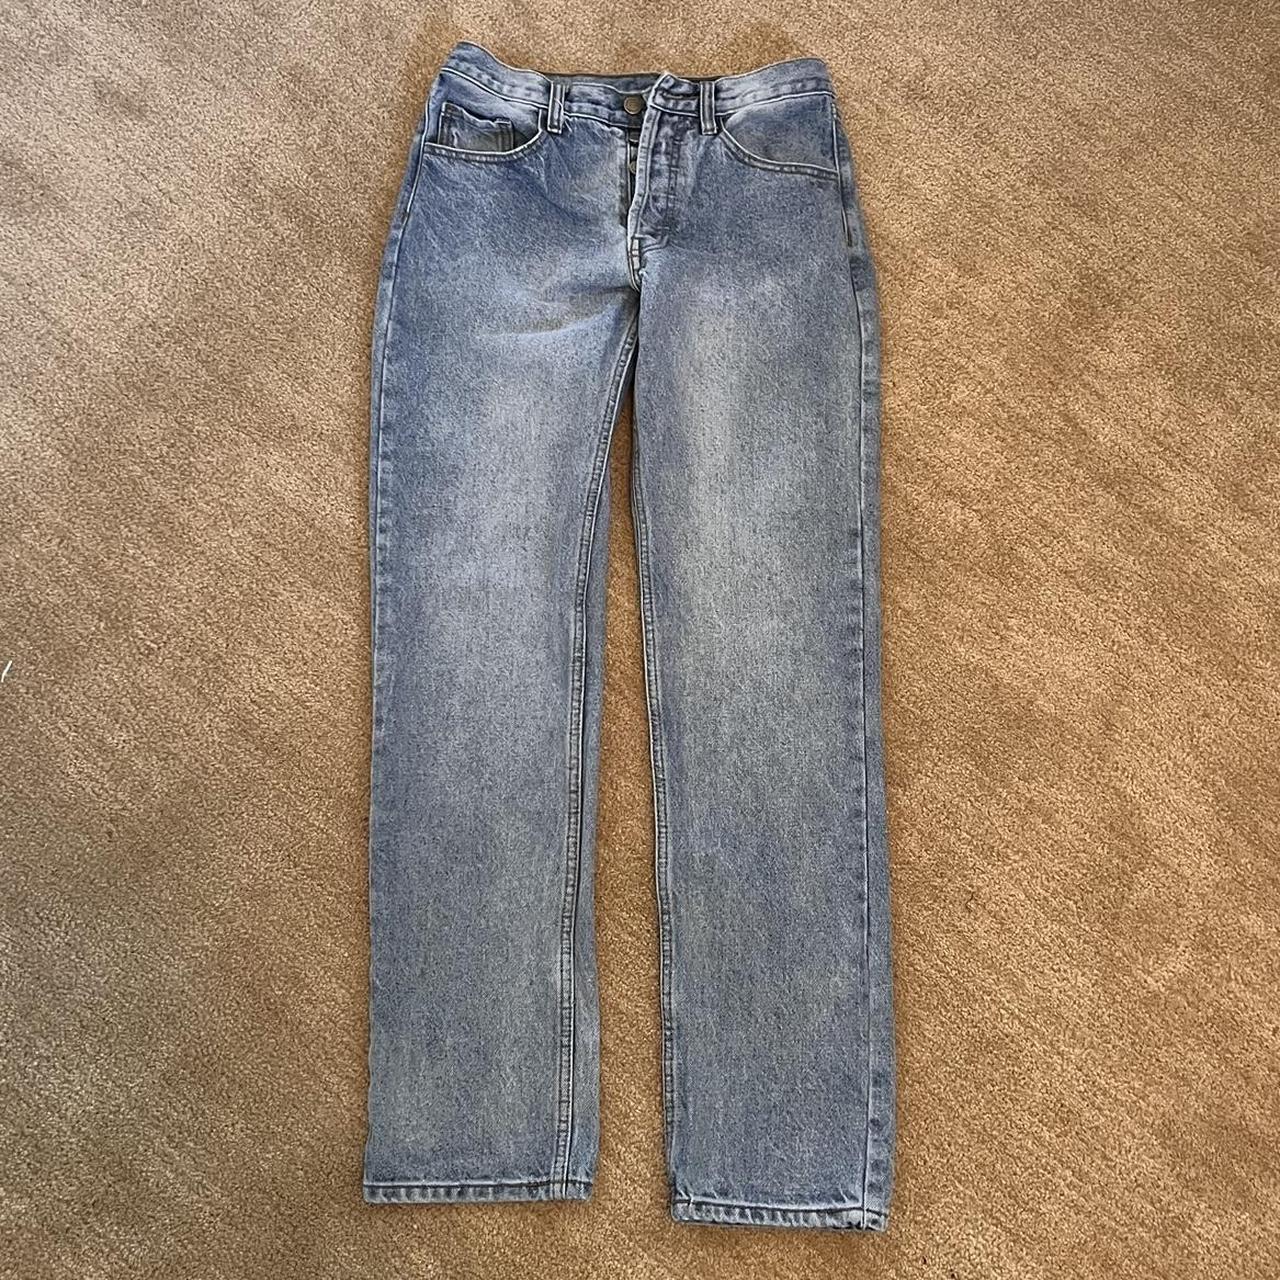 Brandy Melville John Galt Jeans in Size... - Depop